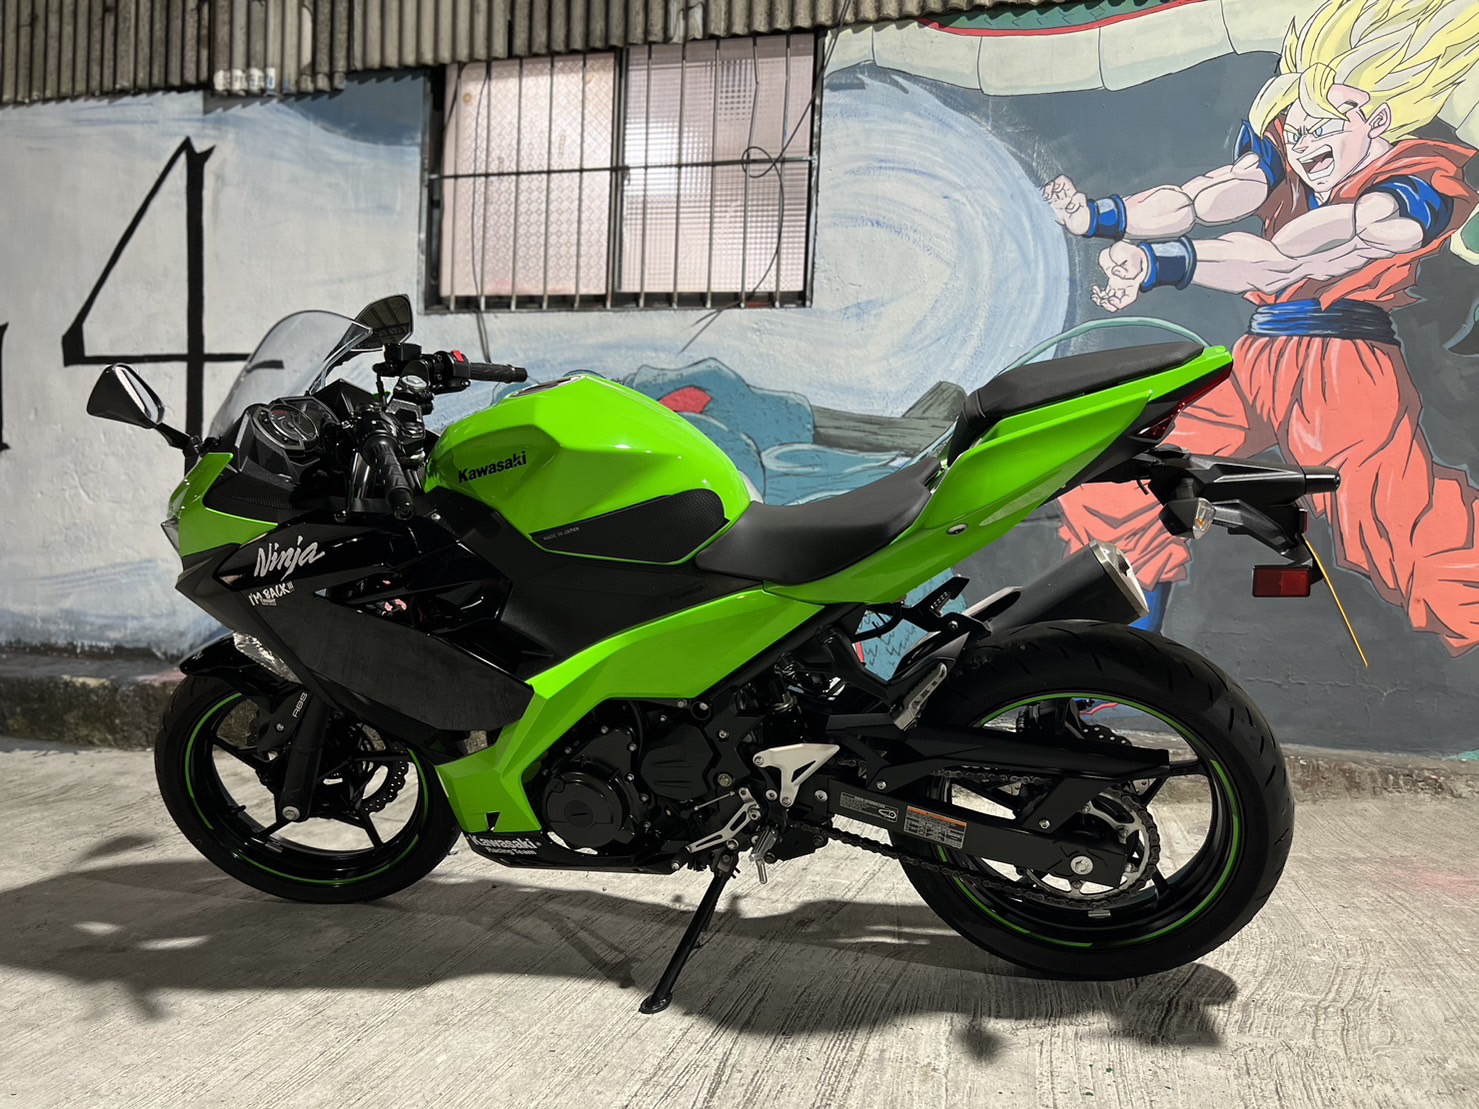 KAWASAKI NINJA400 - 中古/二手車出售中 Kawasaki Ninja 忍者400 ABS 歡迎詢問:line:@q0984380388 | 個人自售